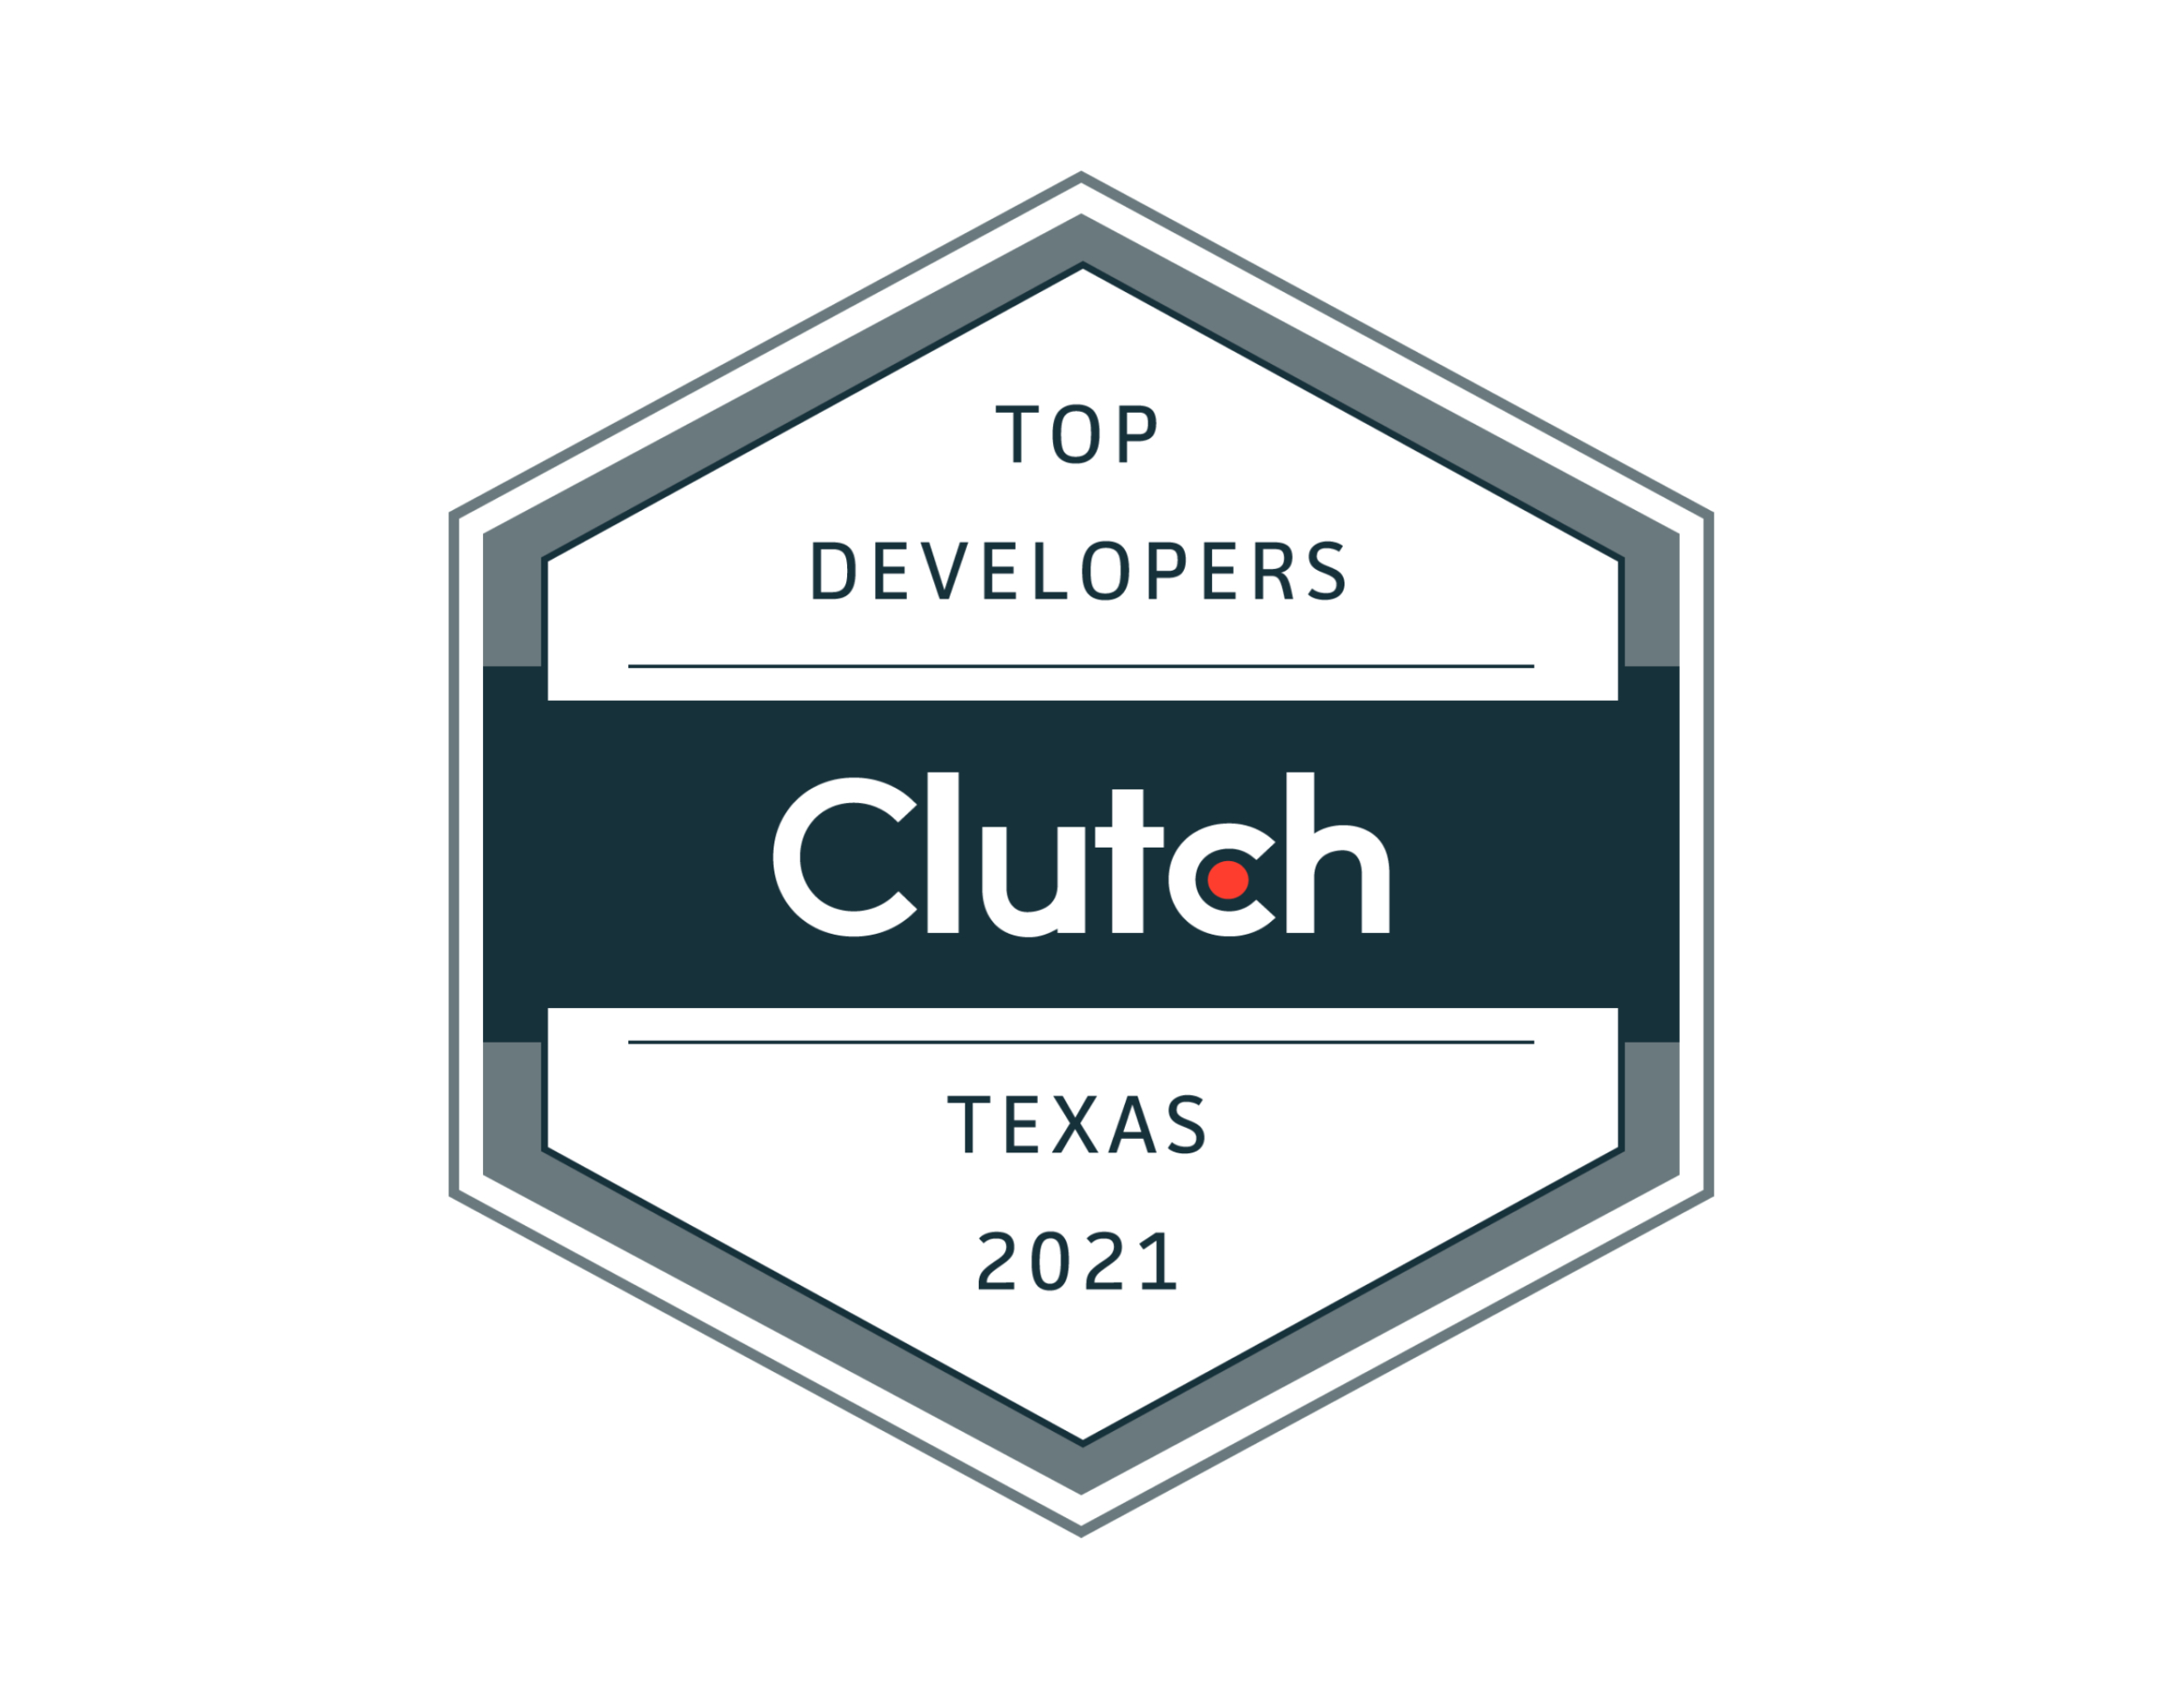 Top Developers 2021 - Clutch